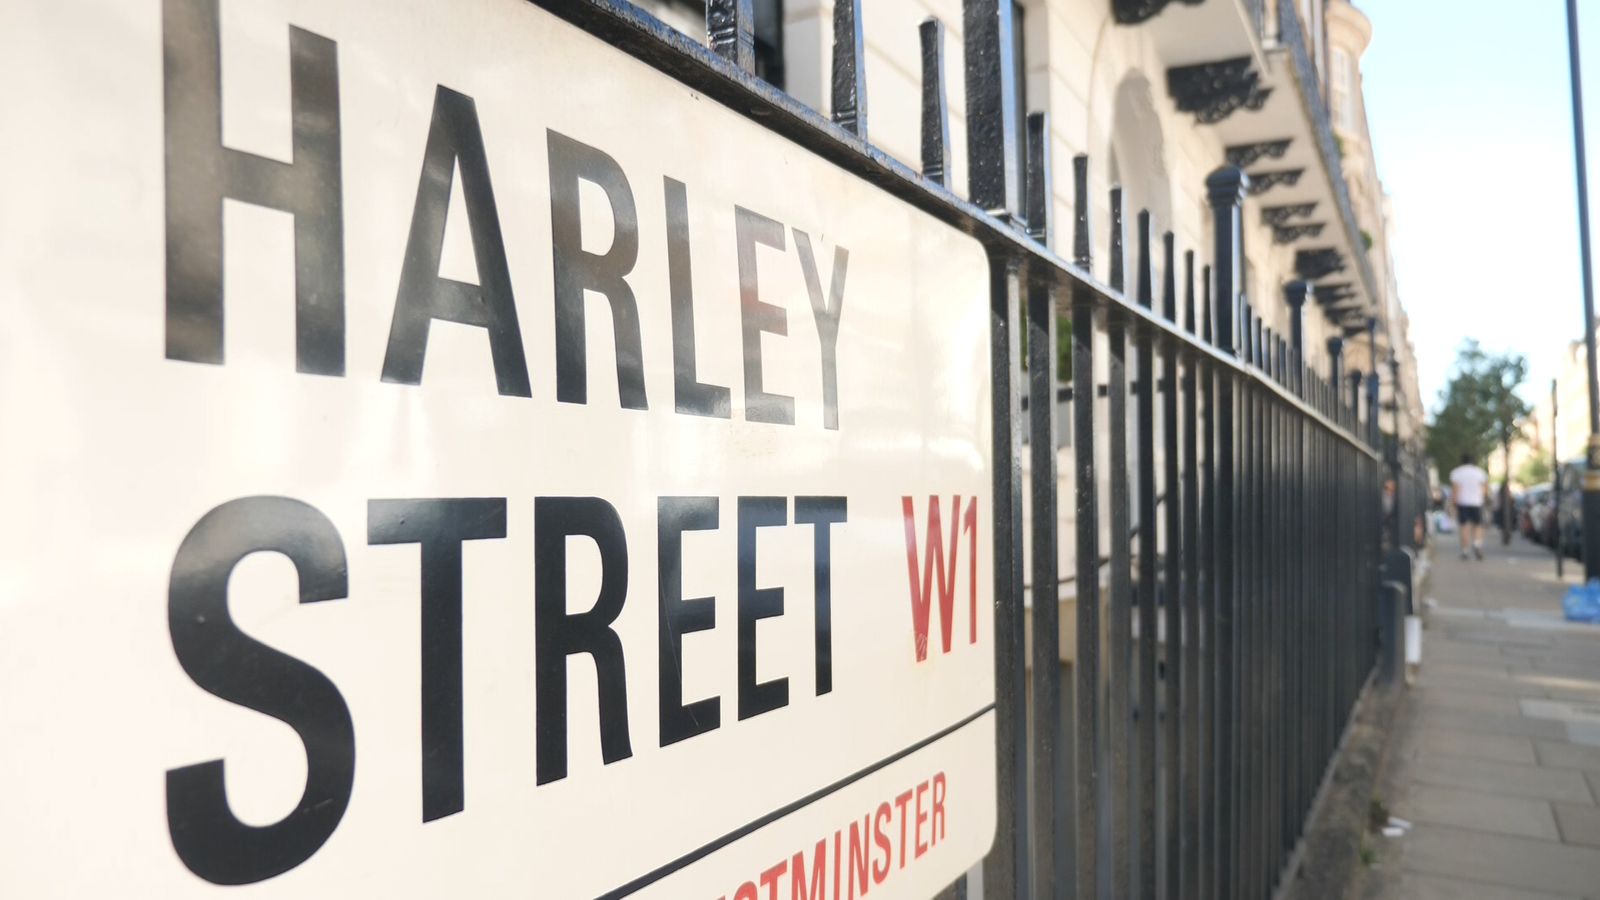 هارليستريت في لندن وهو شارع الاطباء الشعير تجري عمليات لكشف العذرية